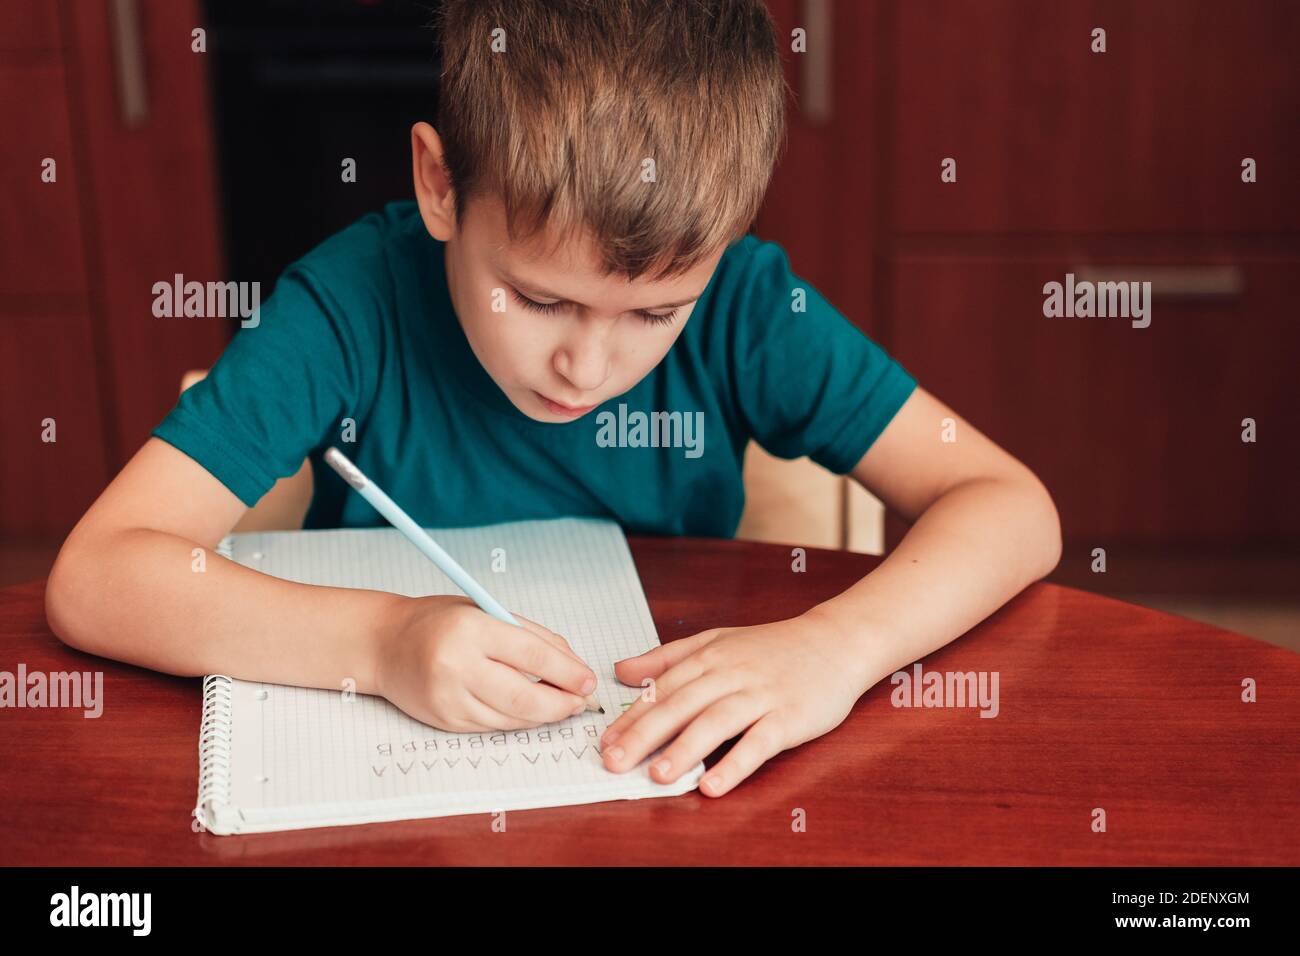 un enfant de 7 ans écrit des lettres dans un carnet assis près de table dans la cuisine Banque D'Images